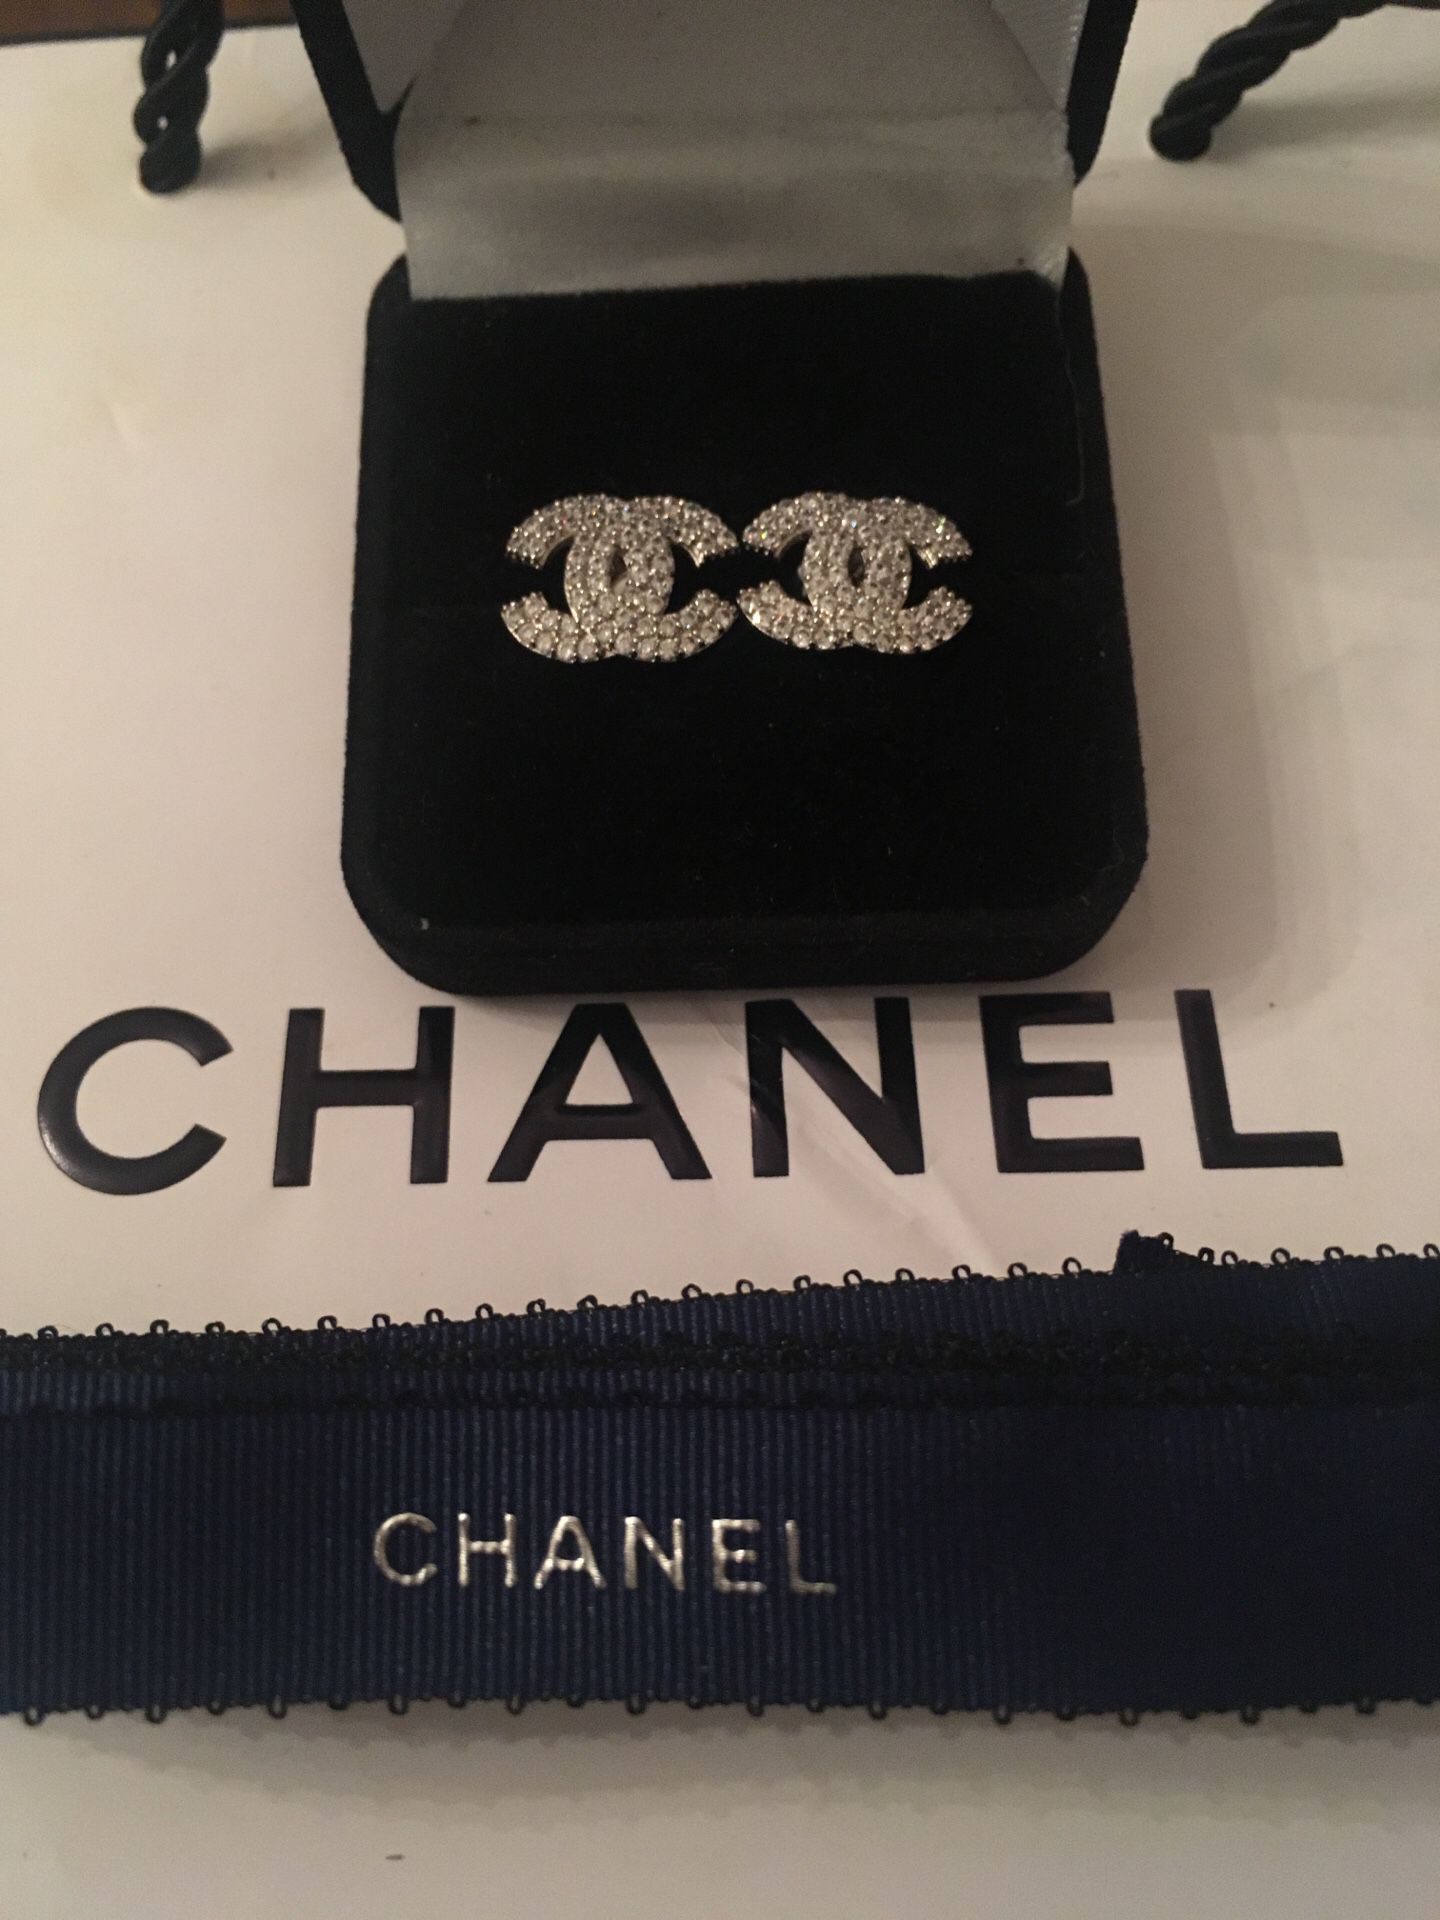 Channel cc diamond luxury post earrings